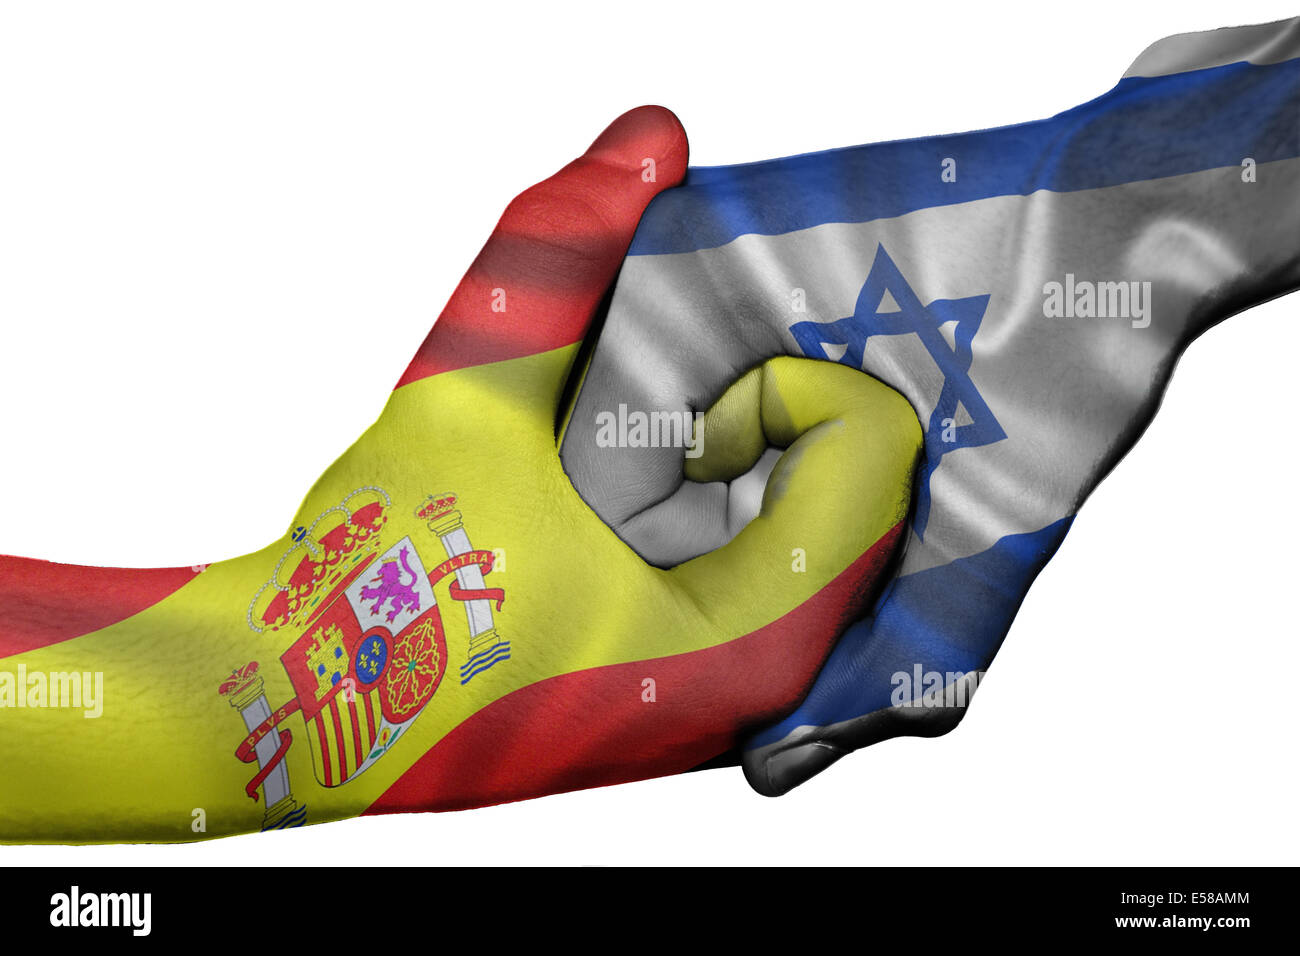 Diplomatischen Handshake zwischen den Ländern: Flaggen von Spanien und Israel überdruckte die beiden Hände Stockfoto